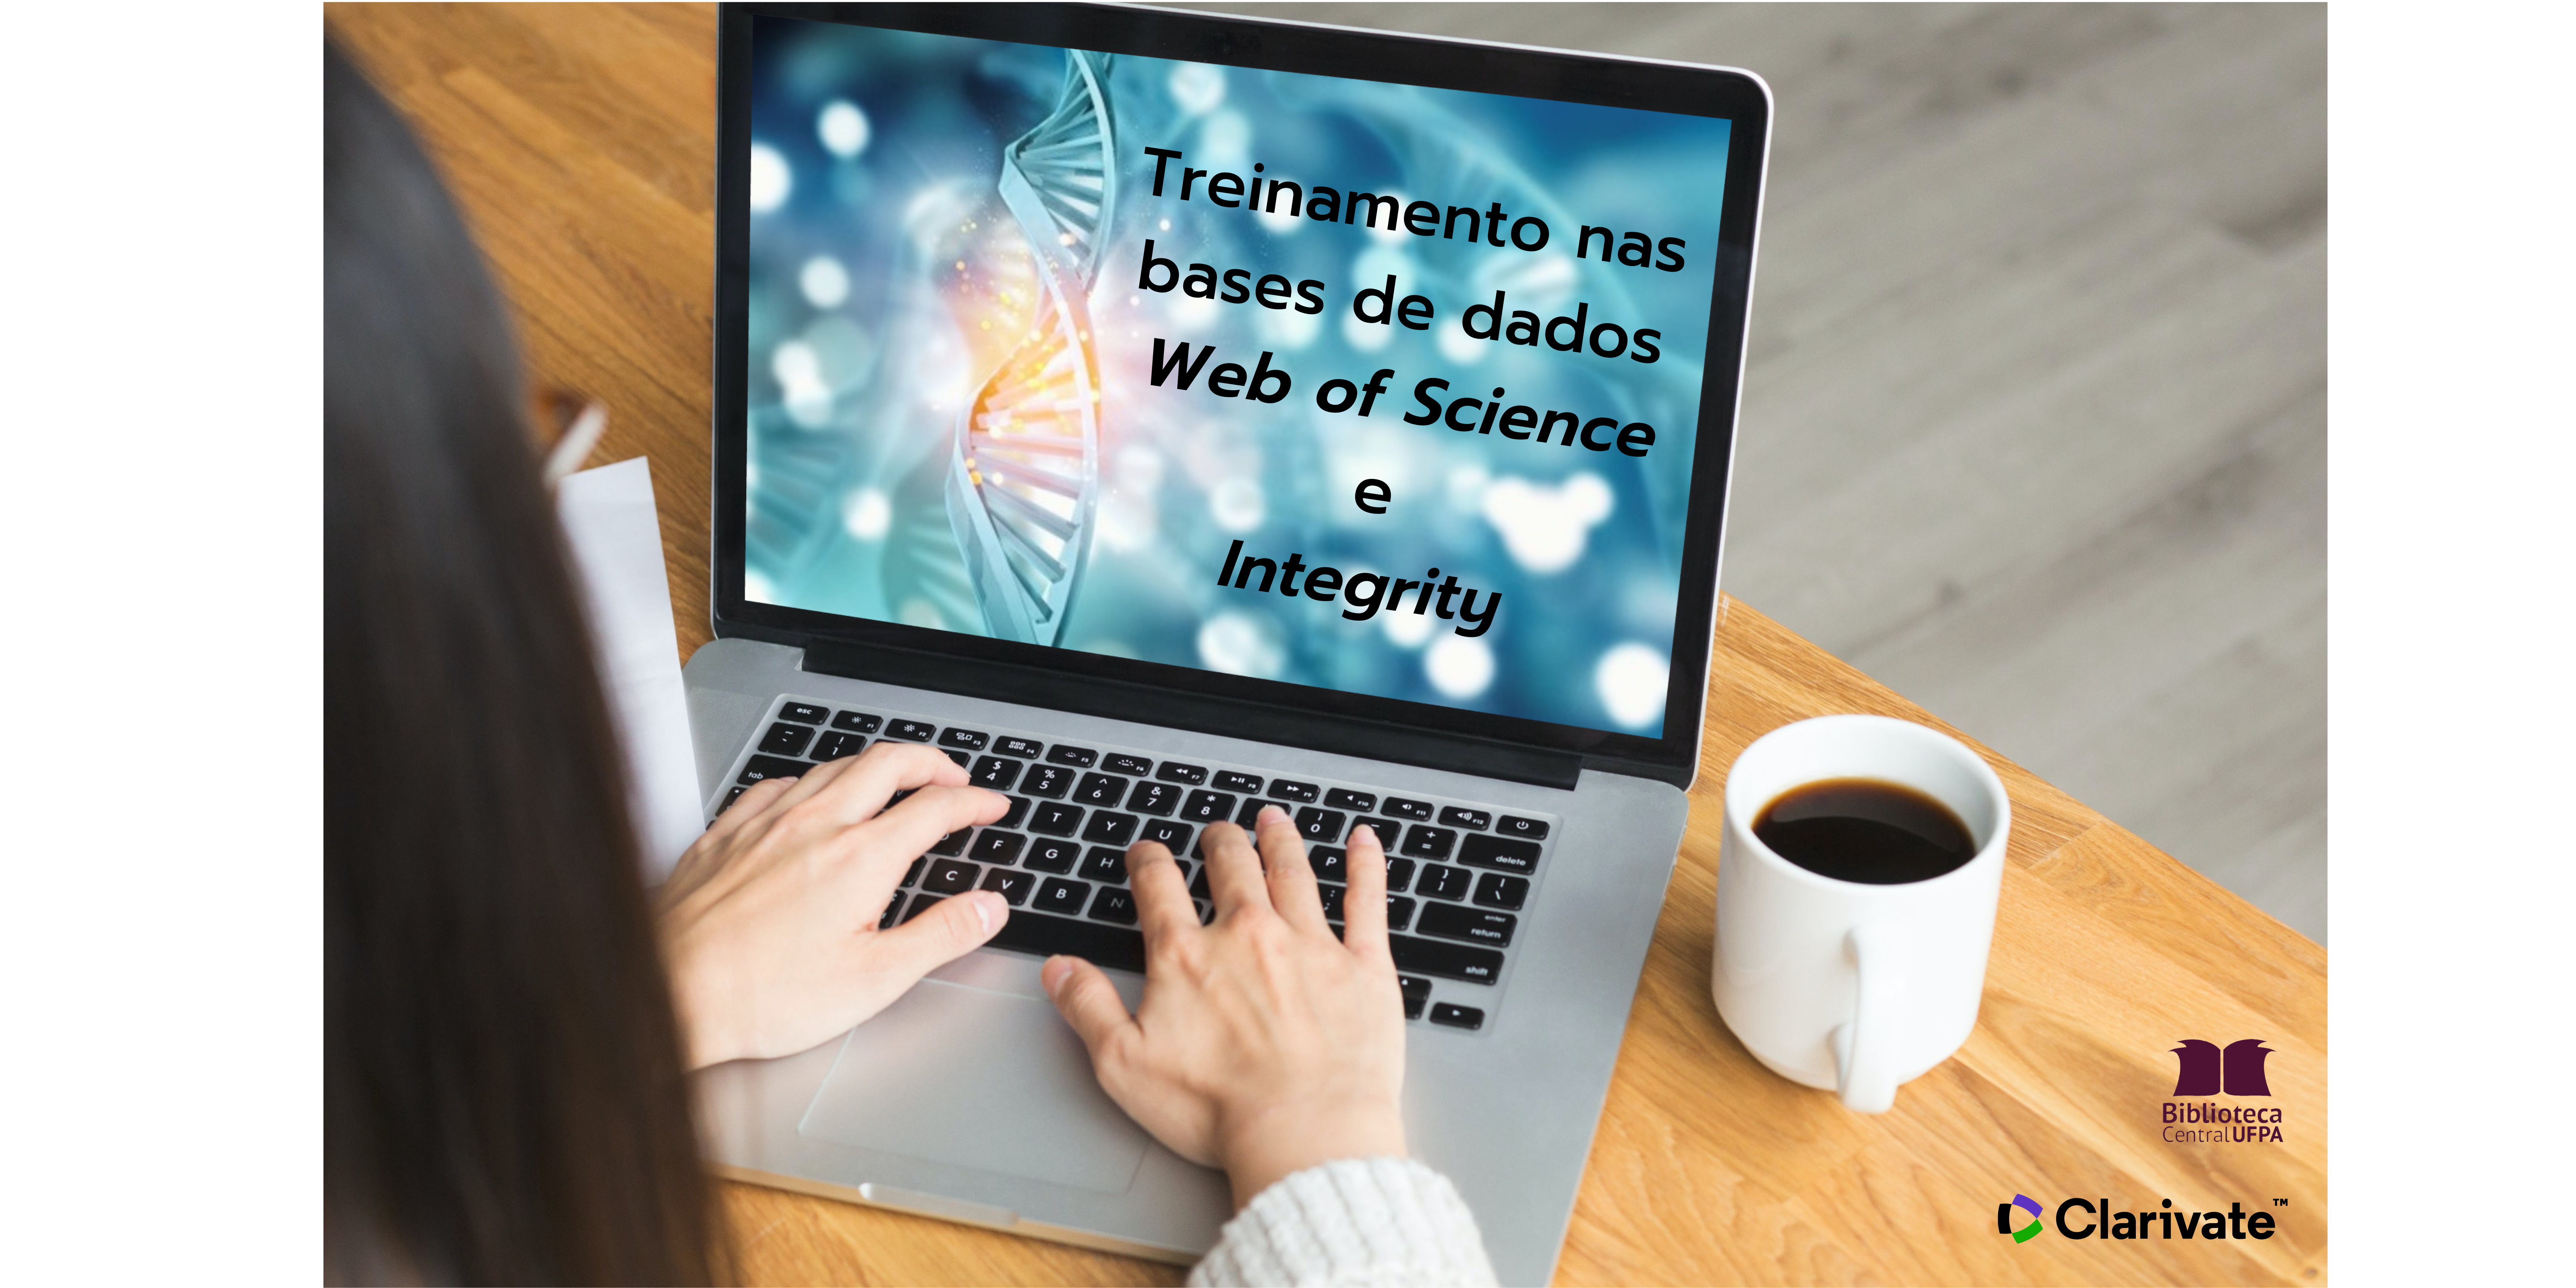 Treinamento nas bases de dados Web of Science e Integrity: utilização integrada para análises e estudos em Life Sciences